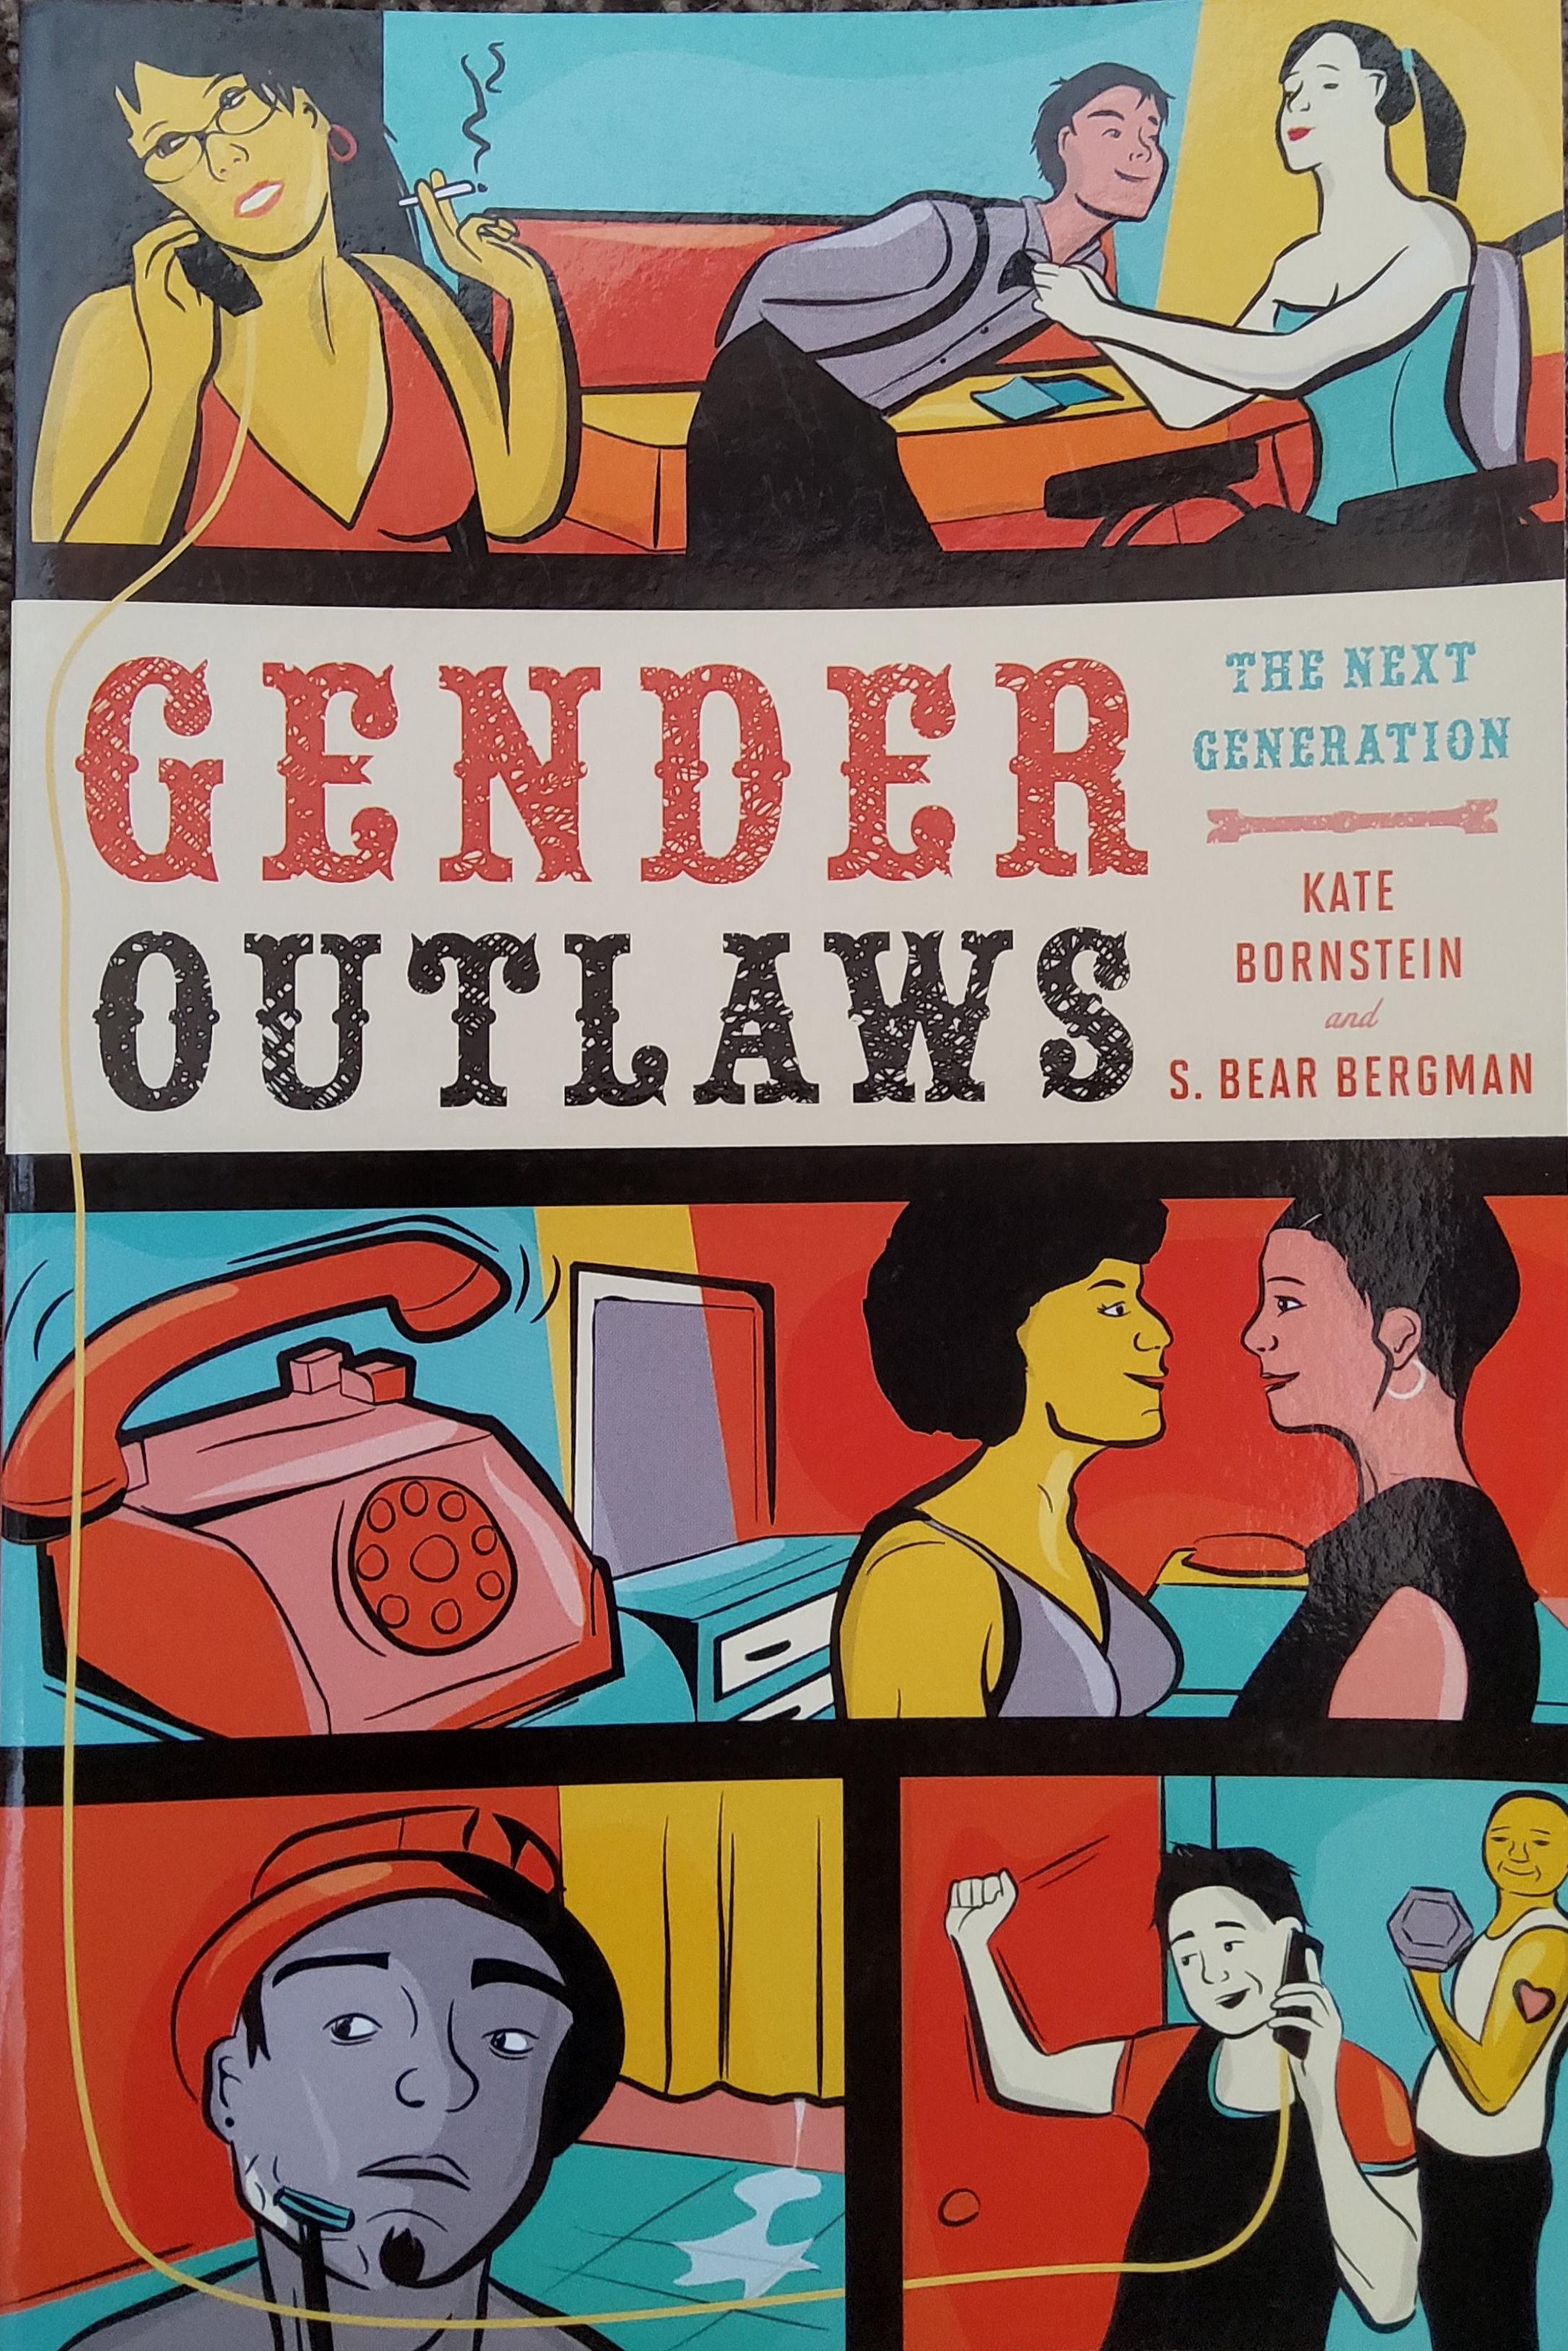 gender-outlaws-kate-bornstein-and-s-bear-bergman-gender-community-lending-library